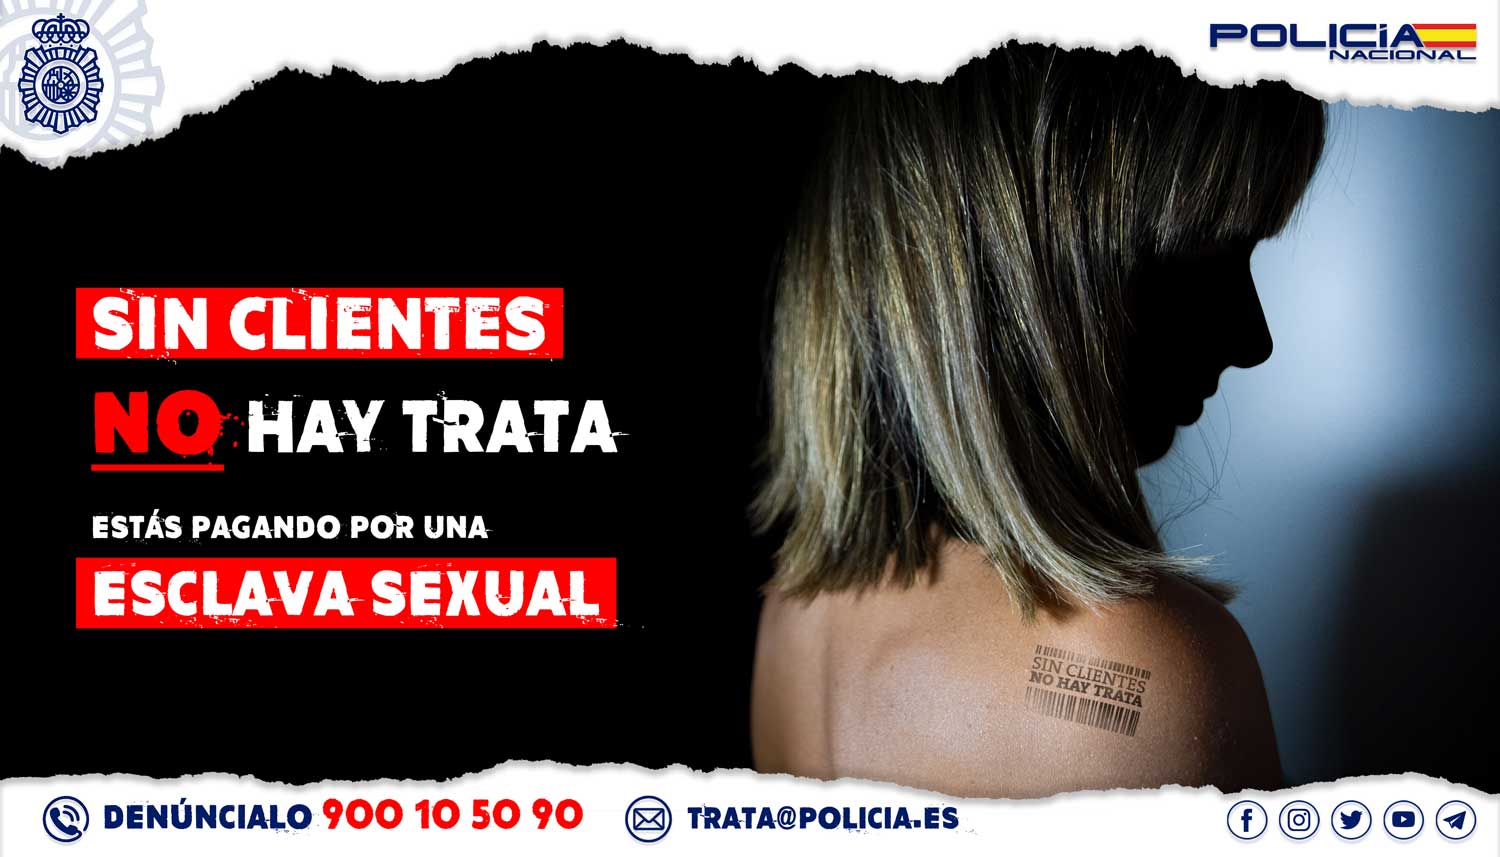 Campaña contra la prostitución de la Policía Nacional / EUROPA PRESS